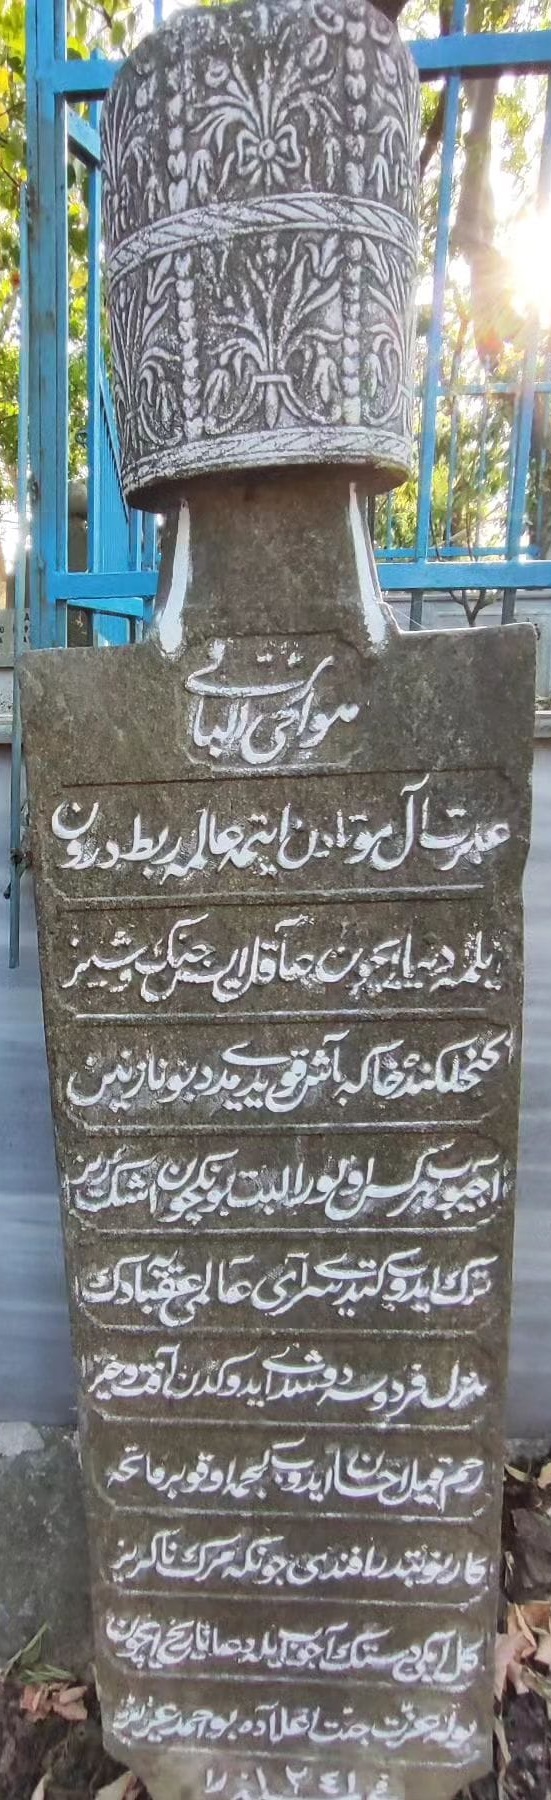 Ahmed Aziz Osmanlı mezar taşı